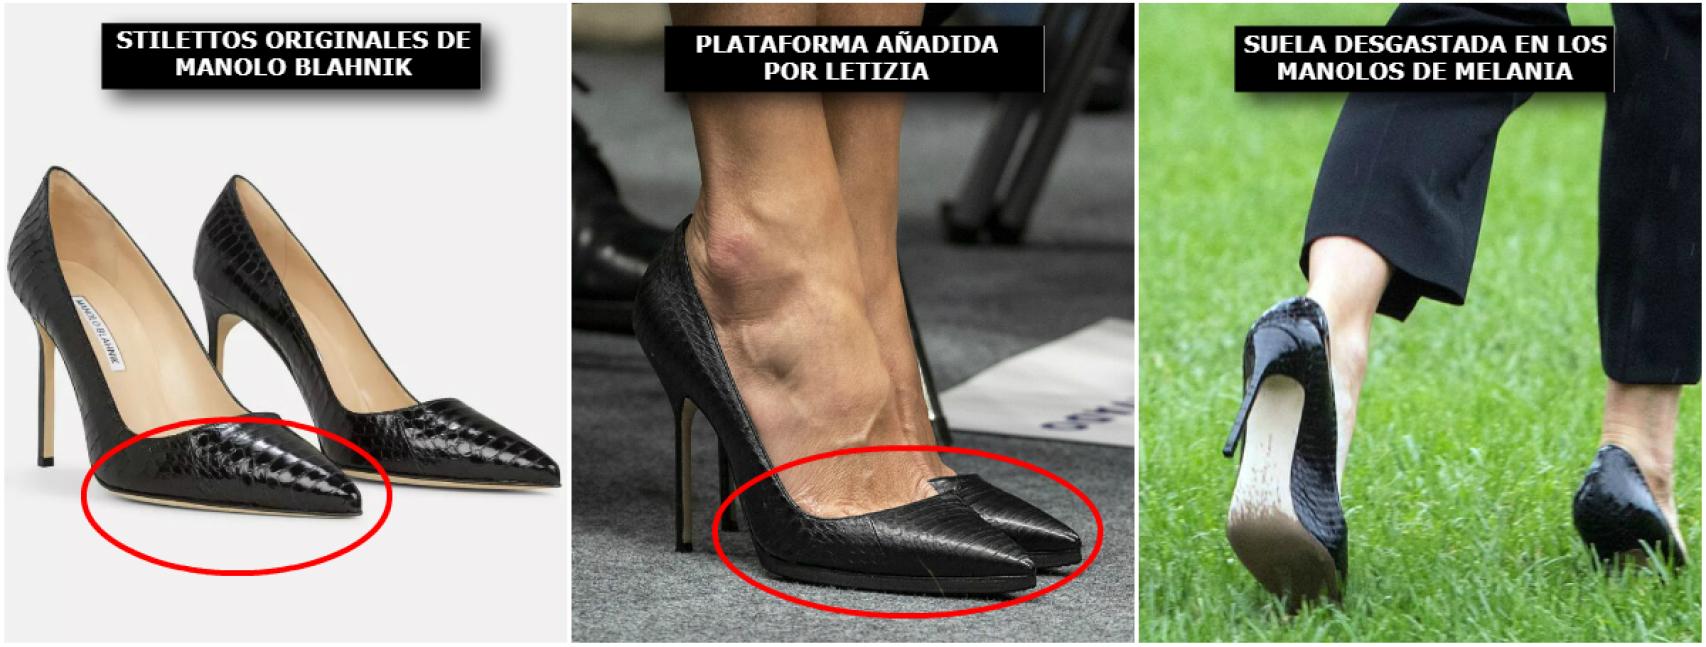 La reina Letizia adapta sus zapatos de tacón para que siempre luzcan impecables y ella pueda ir más cómoda.